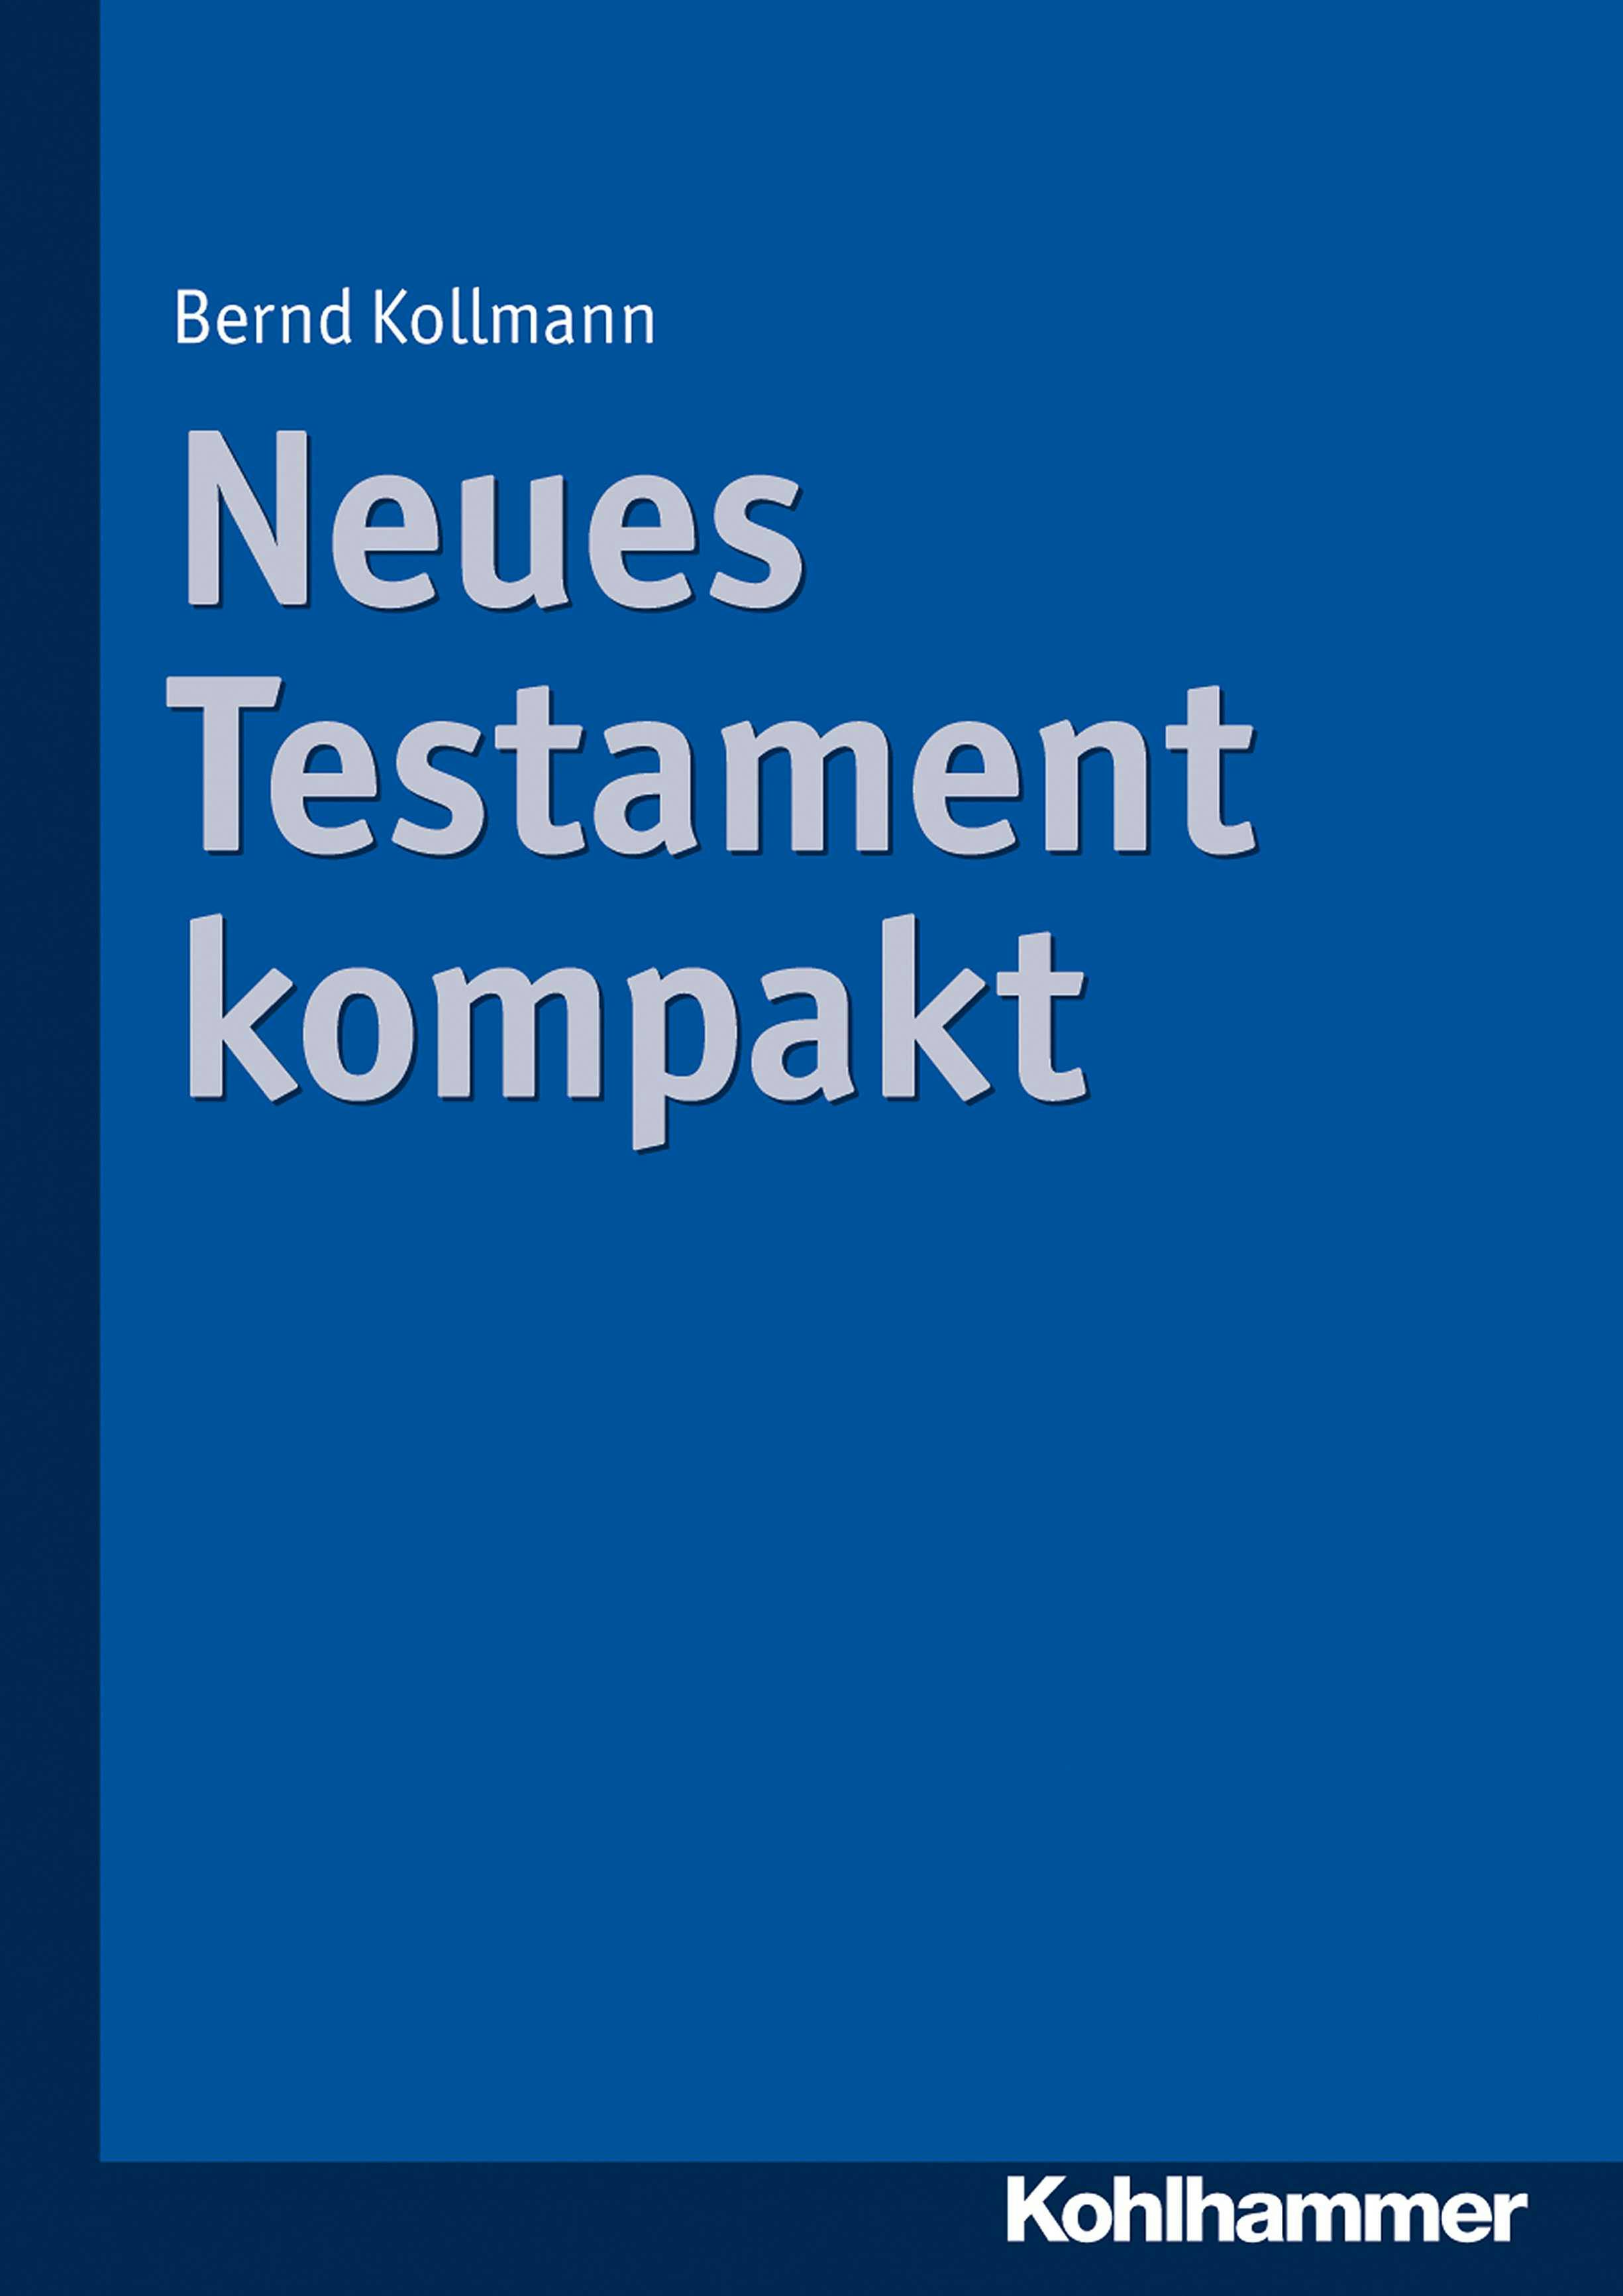 Neues Testament kompakt - Bernd Kollmann